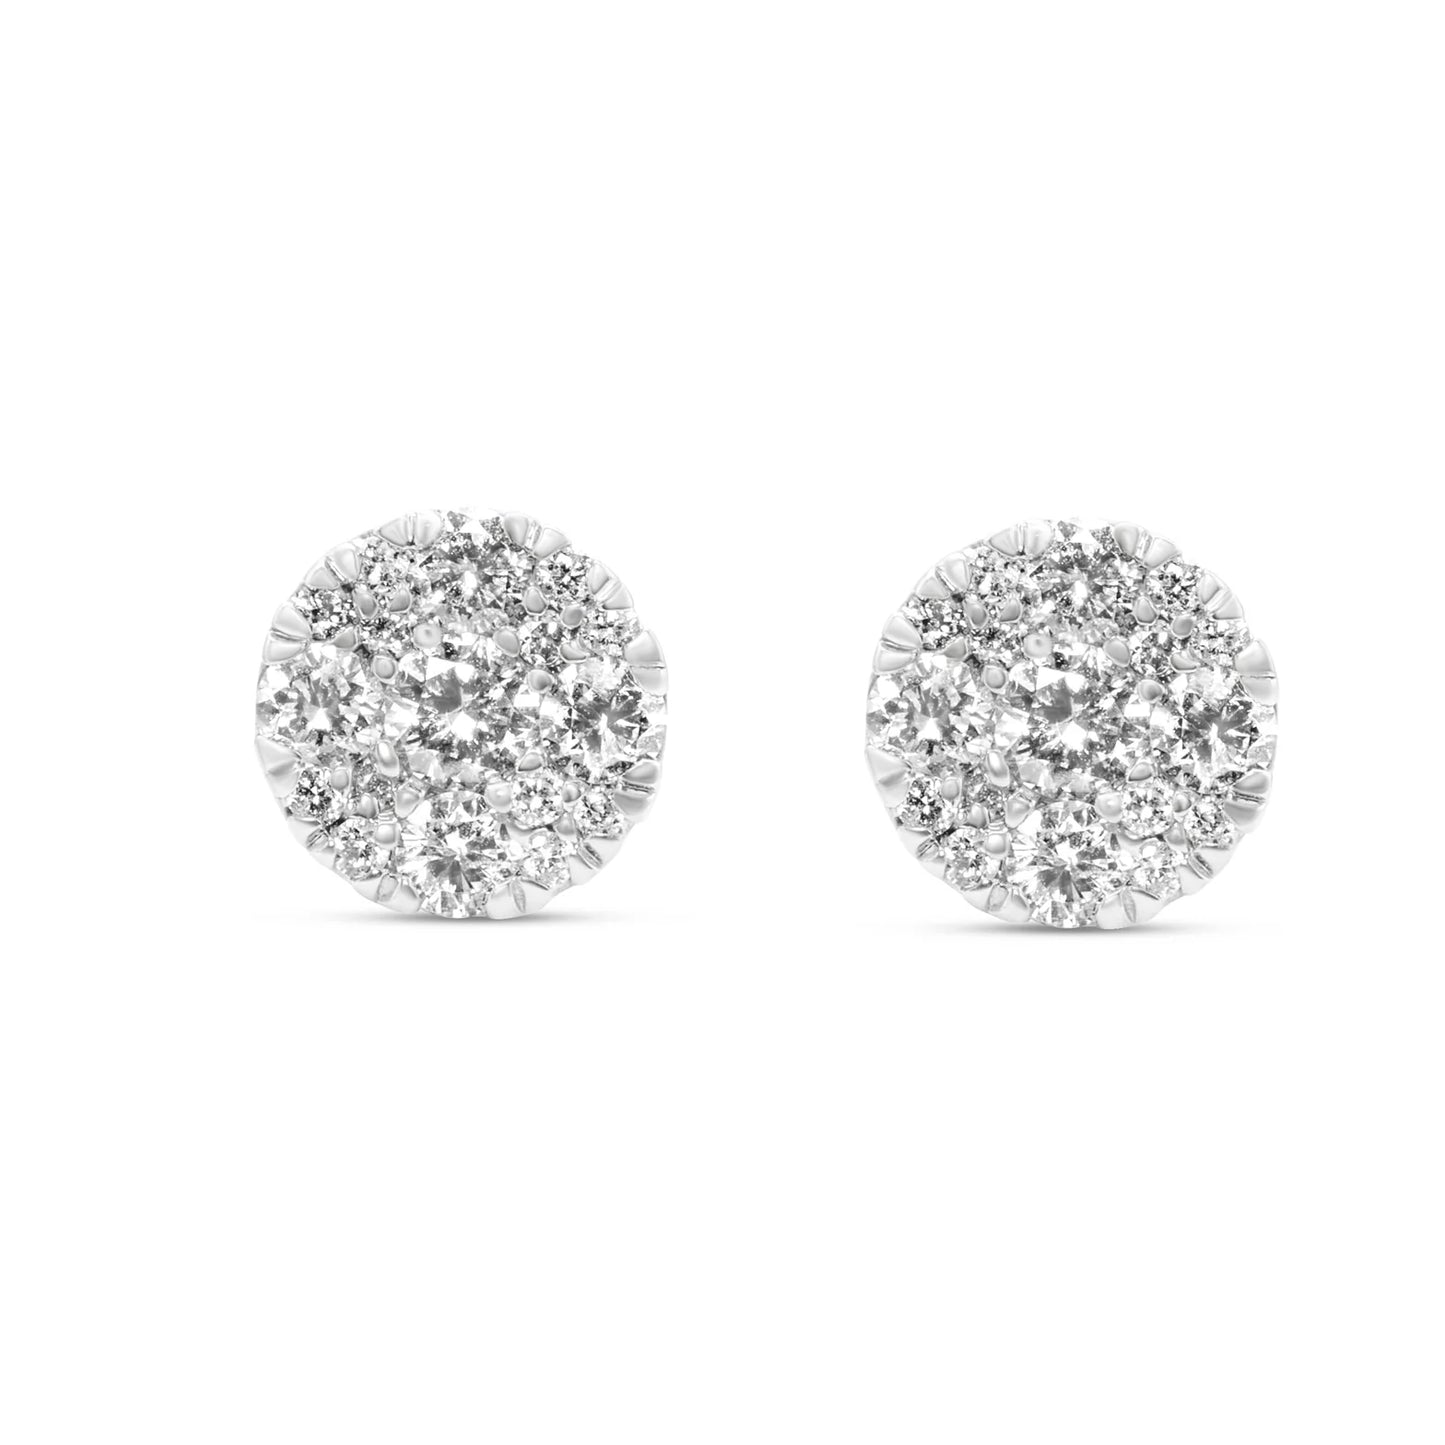 Diamond 14KT White Gold Cluster Earrings 0.75ctw